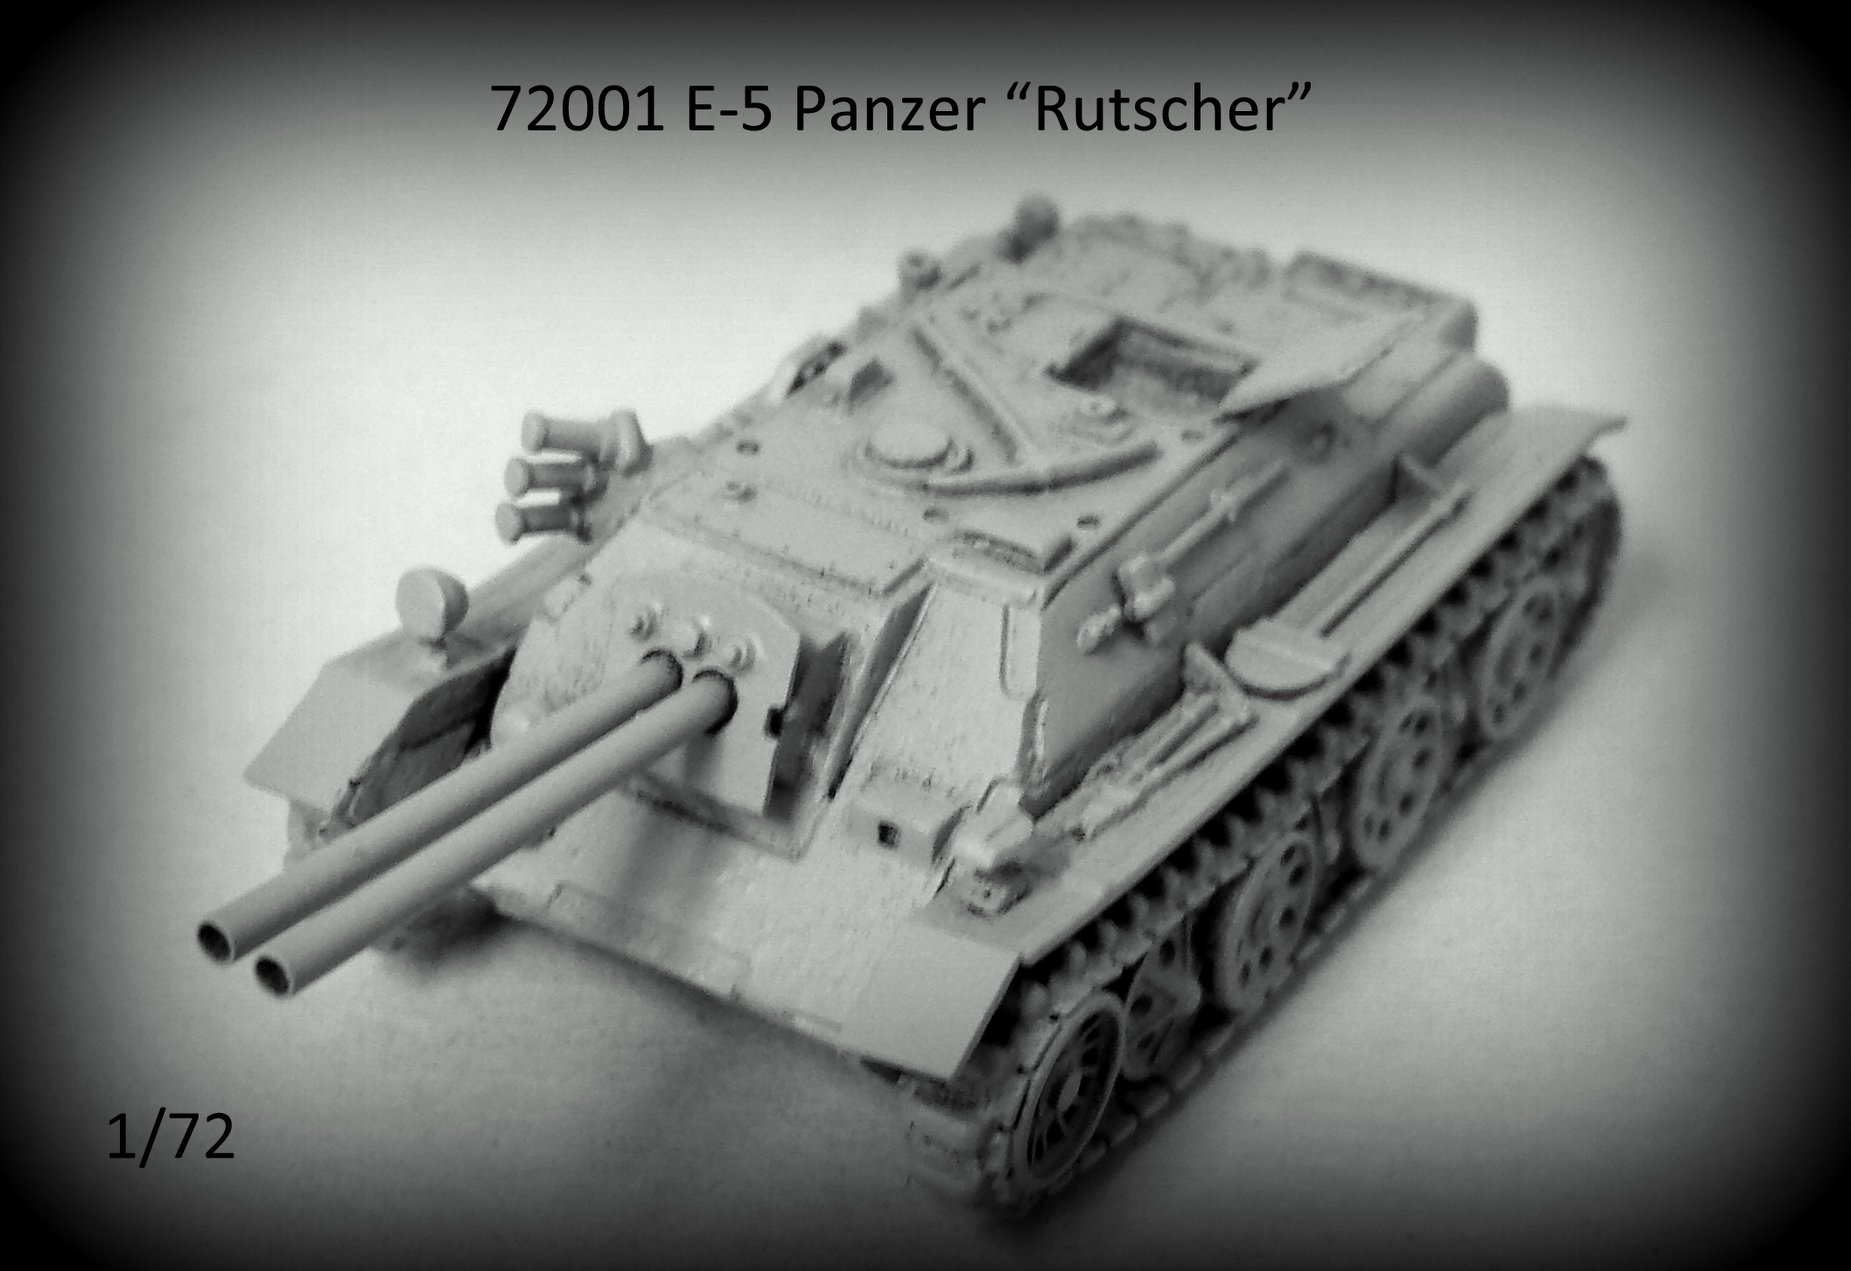 E-5 Panzer (Jagdpanzer) Rutscher